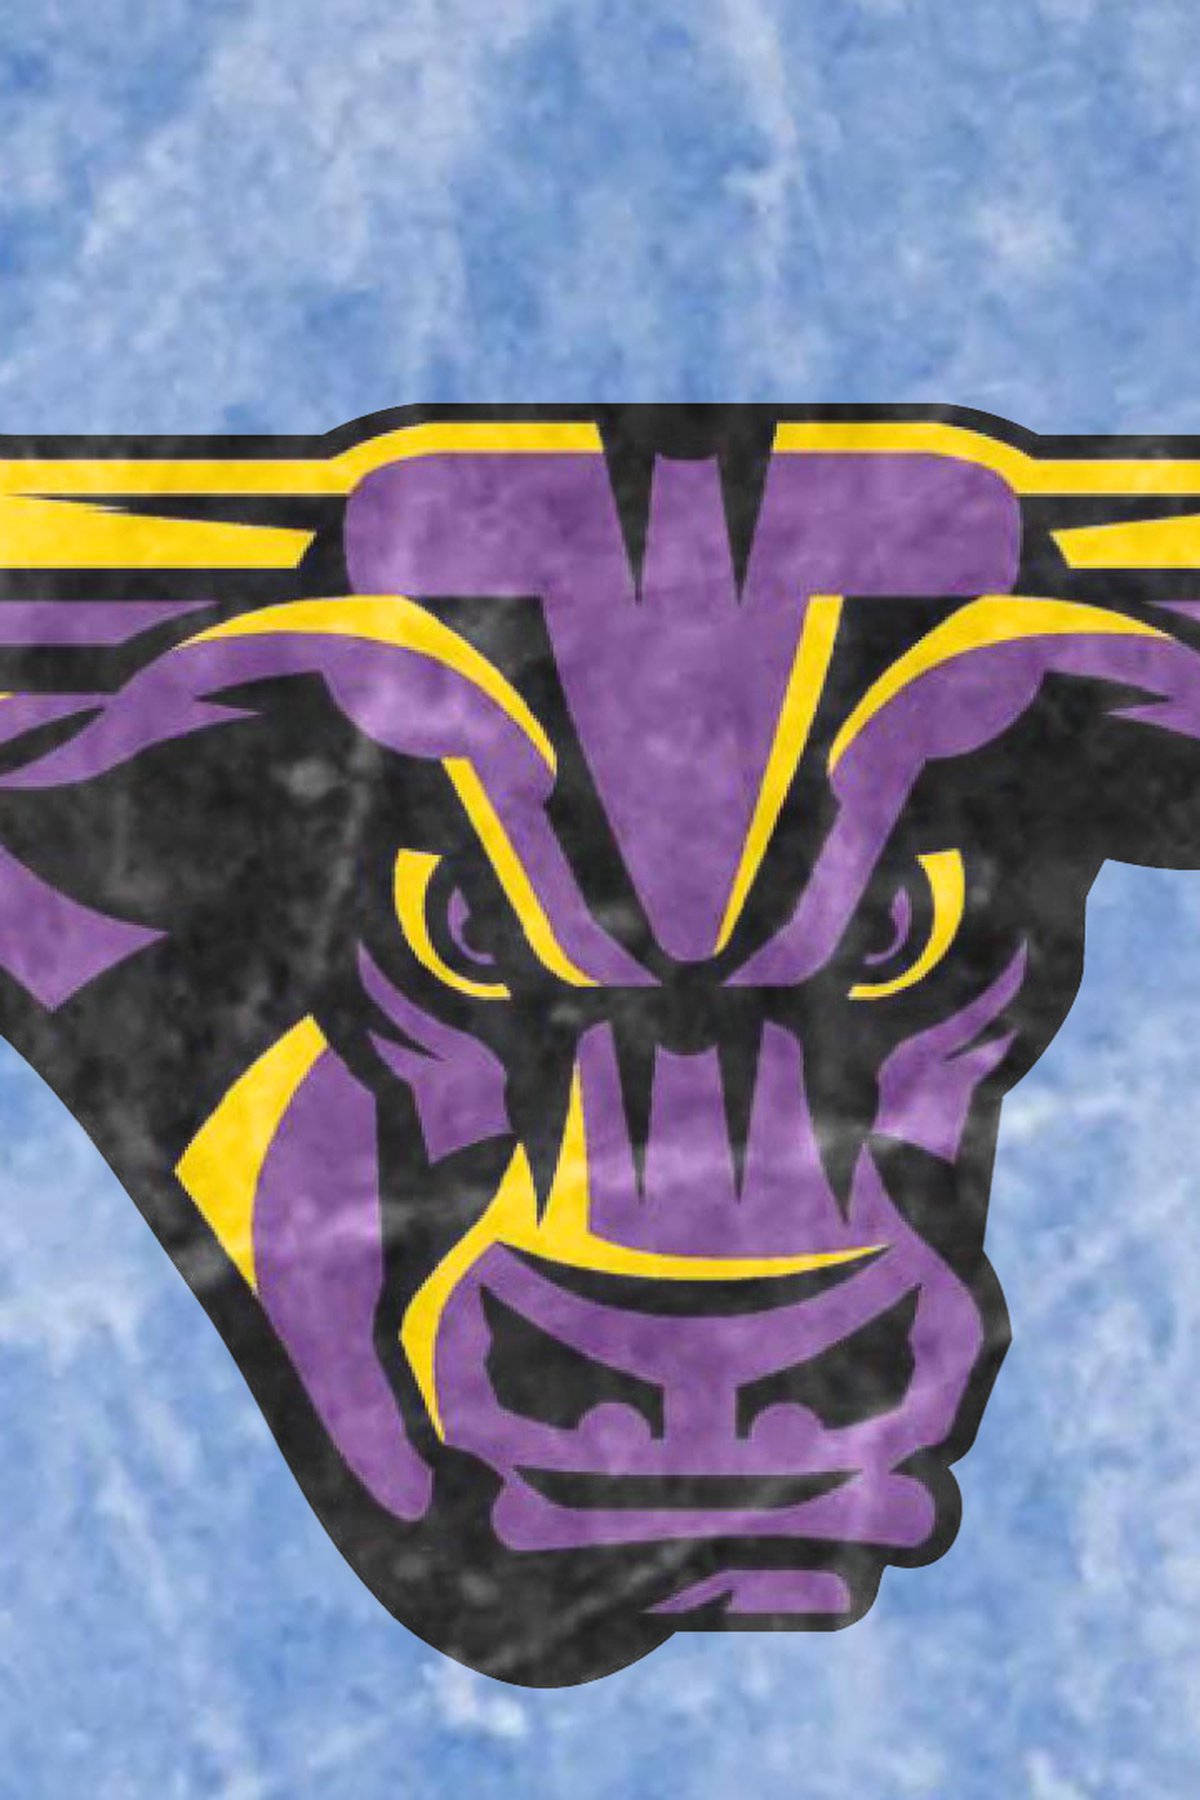 University Of Minnesota Angry Bull Logo Wallpaper